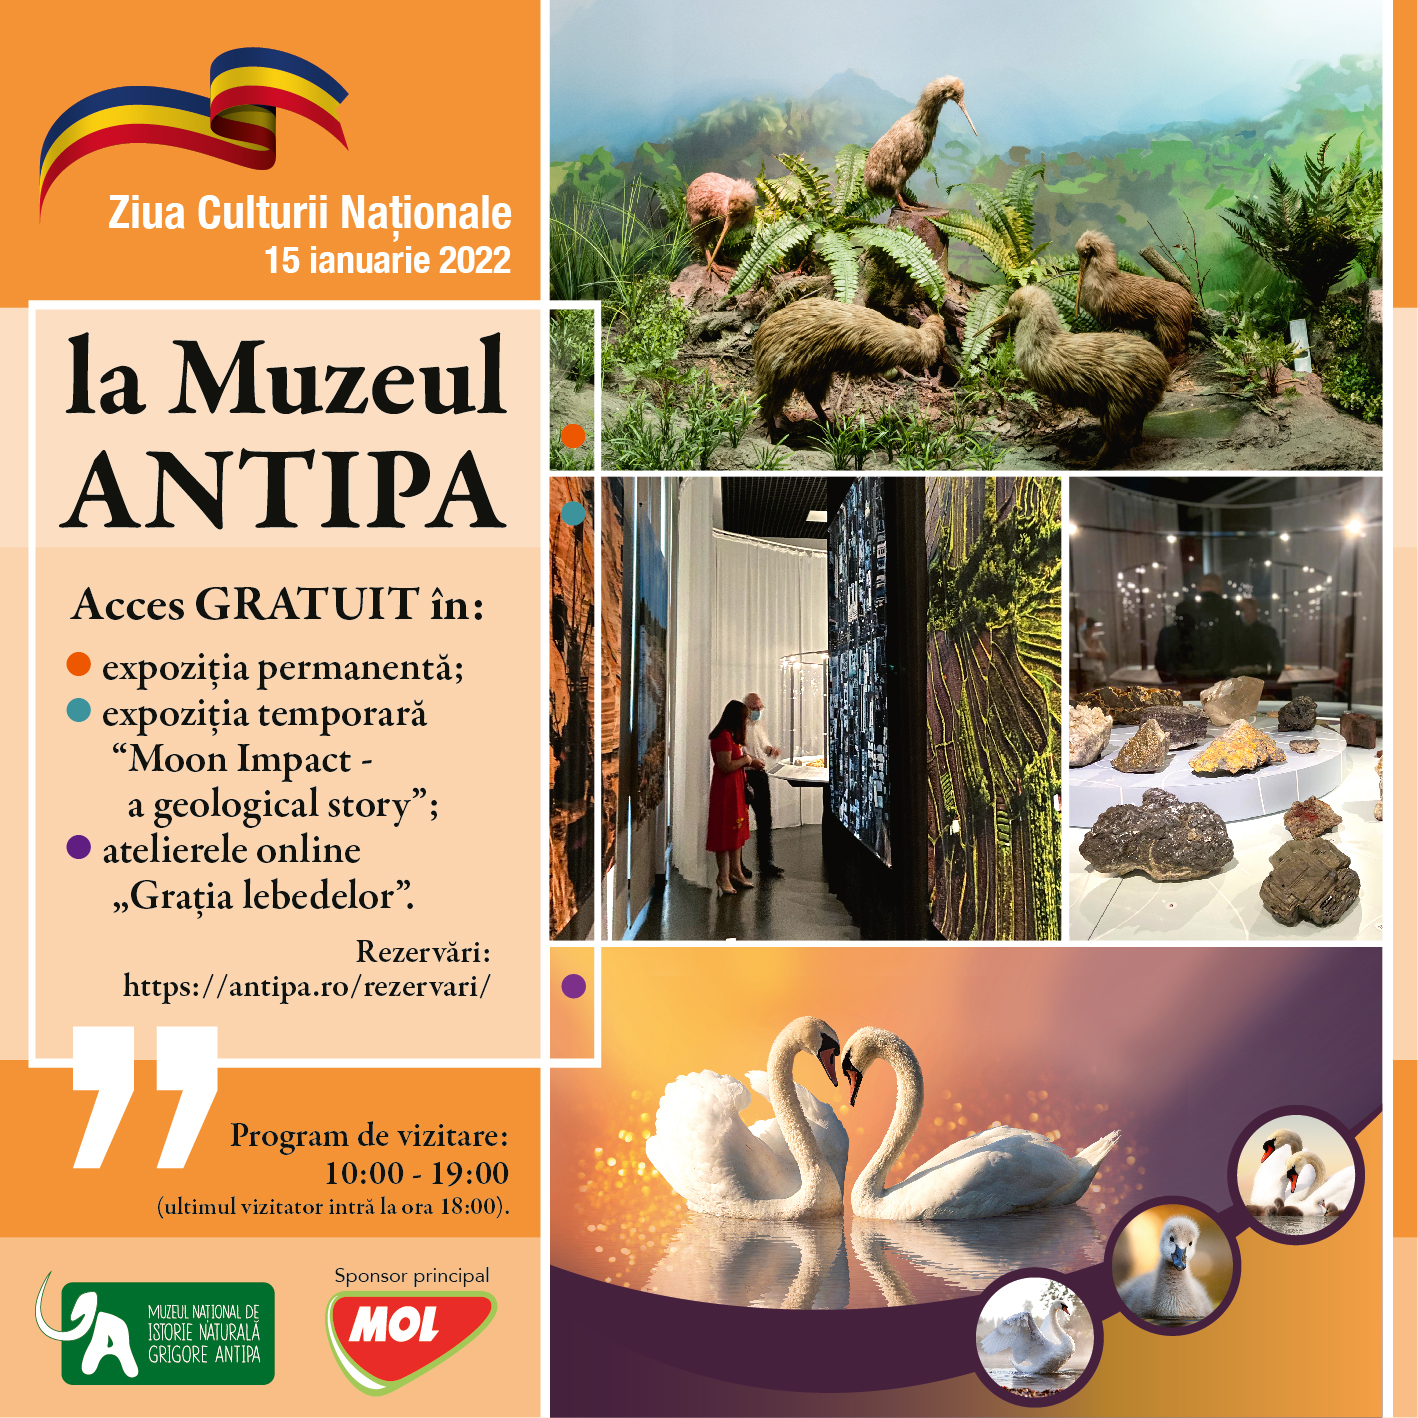 Ziua Culturii Nationale organizată la Muzeul Antipa in data de 15 ianuarie 2022.